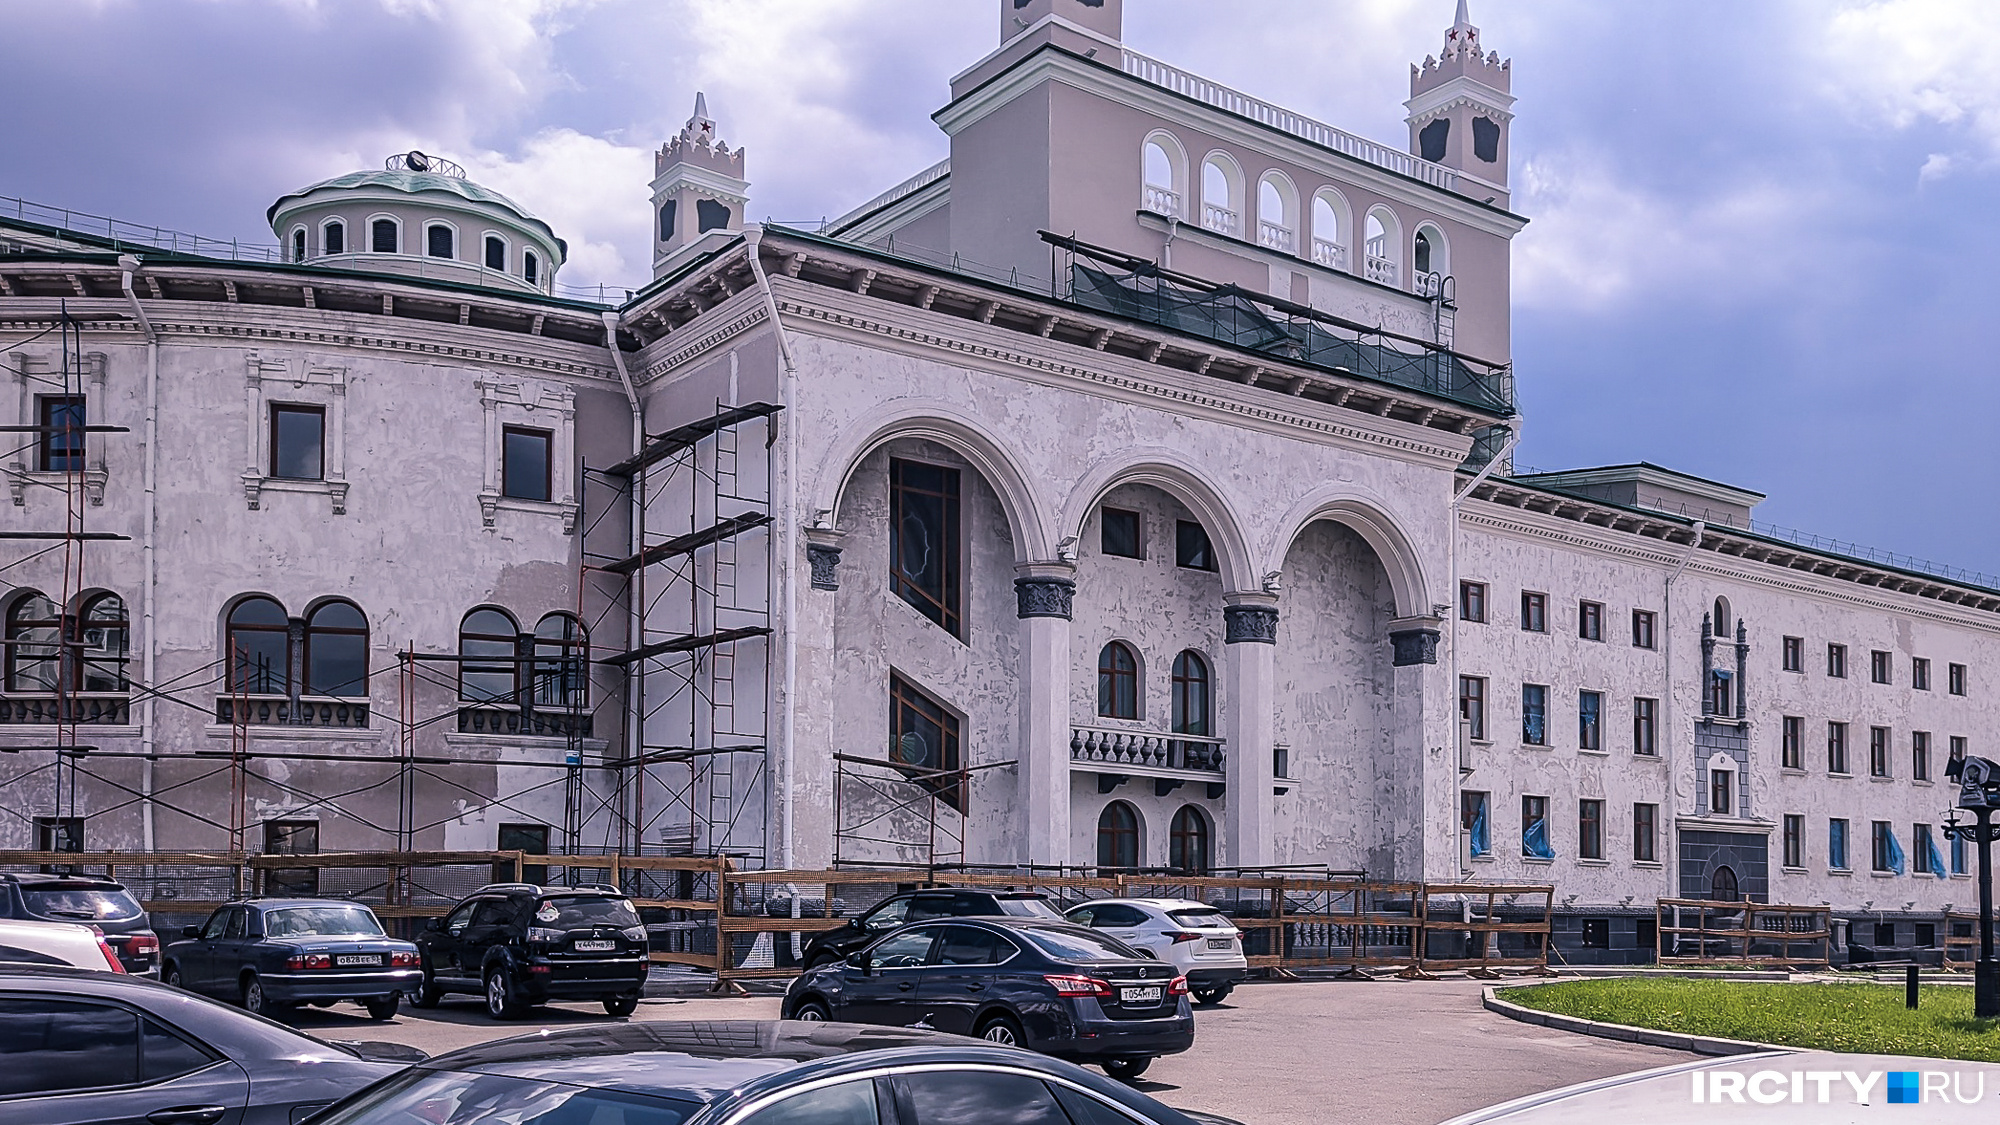 Бурятский академический театр оперы и балета имени Гомбожапа Цыдынжапова, сейчас там идет ремонт